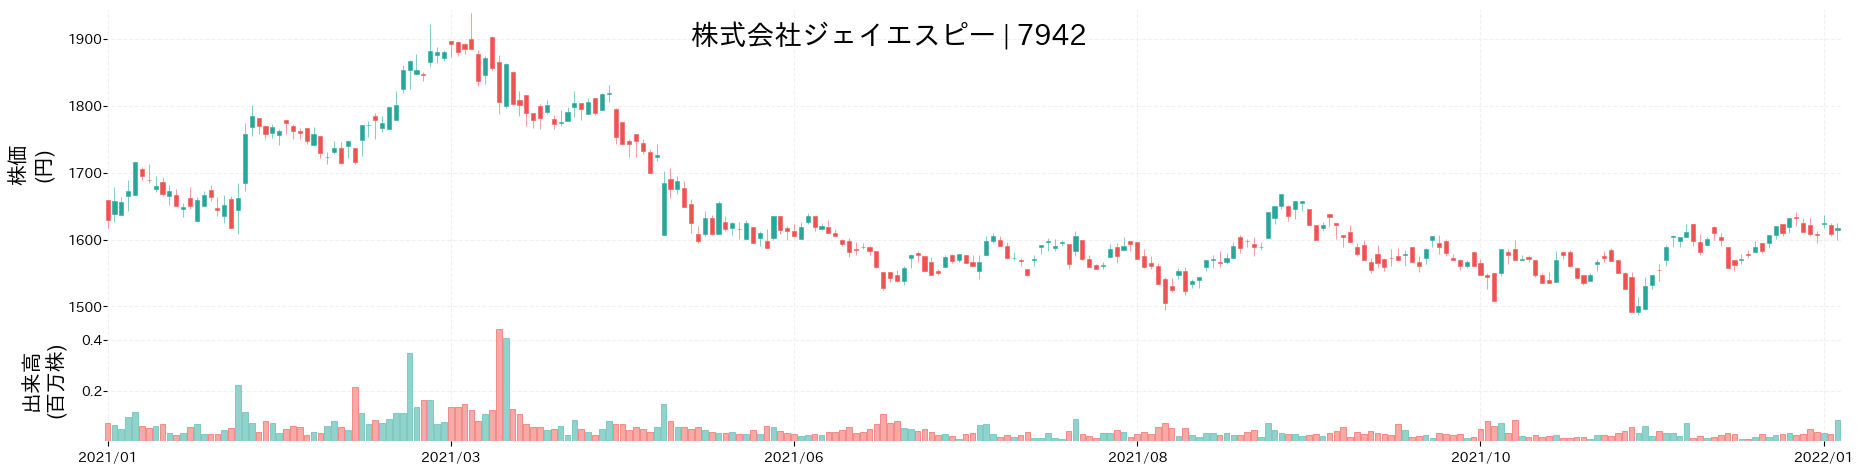 ジェイエスピーの株価推移(2021)